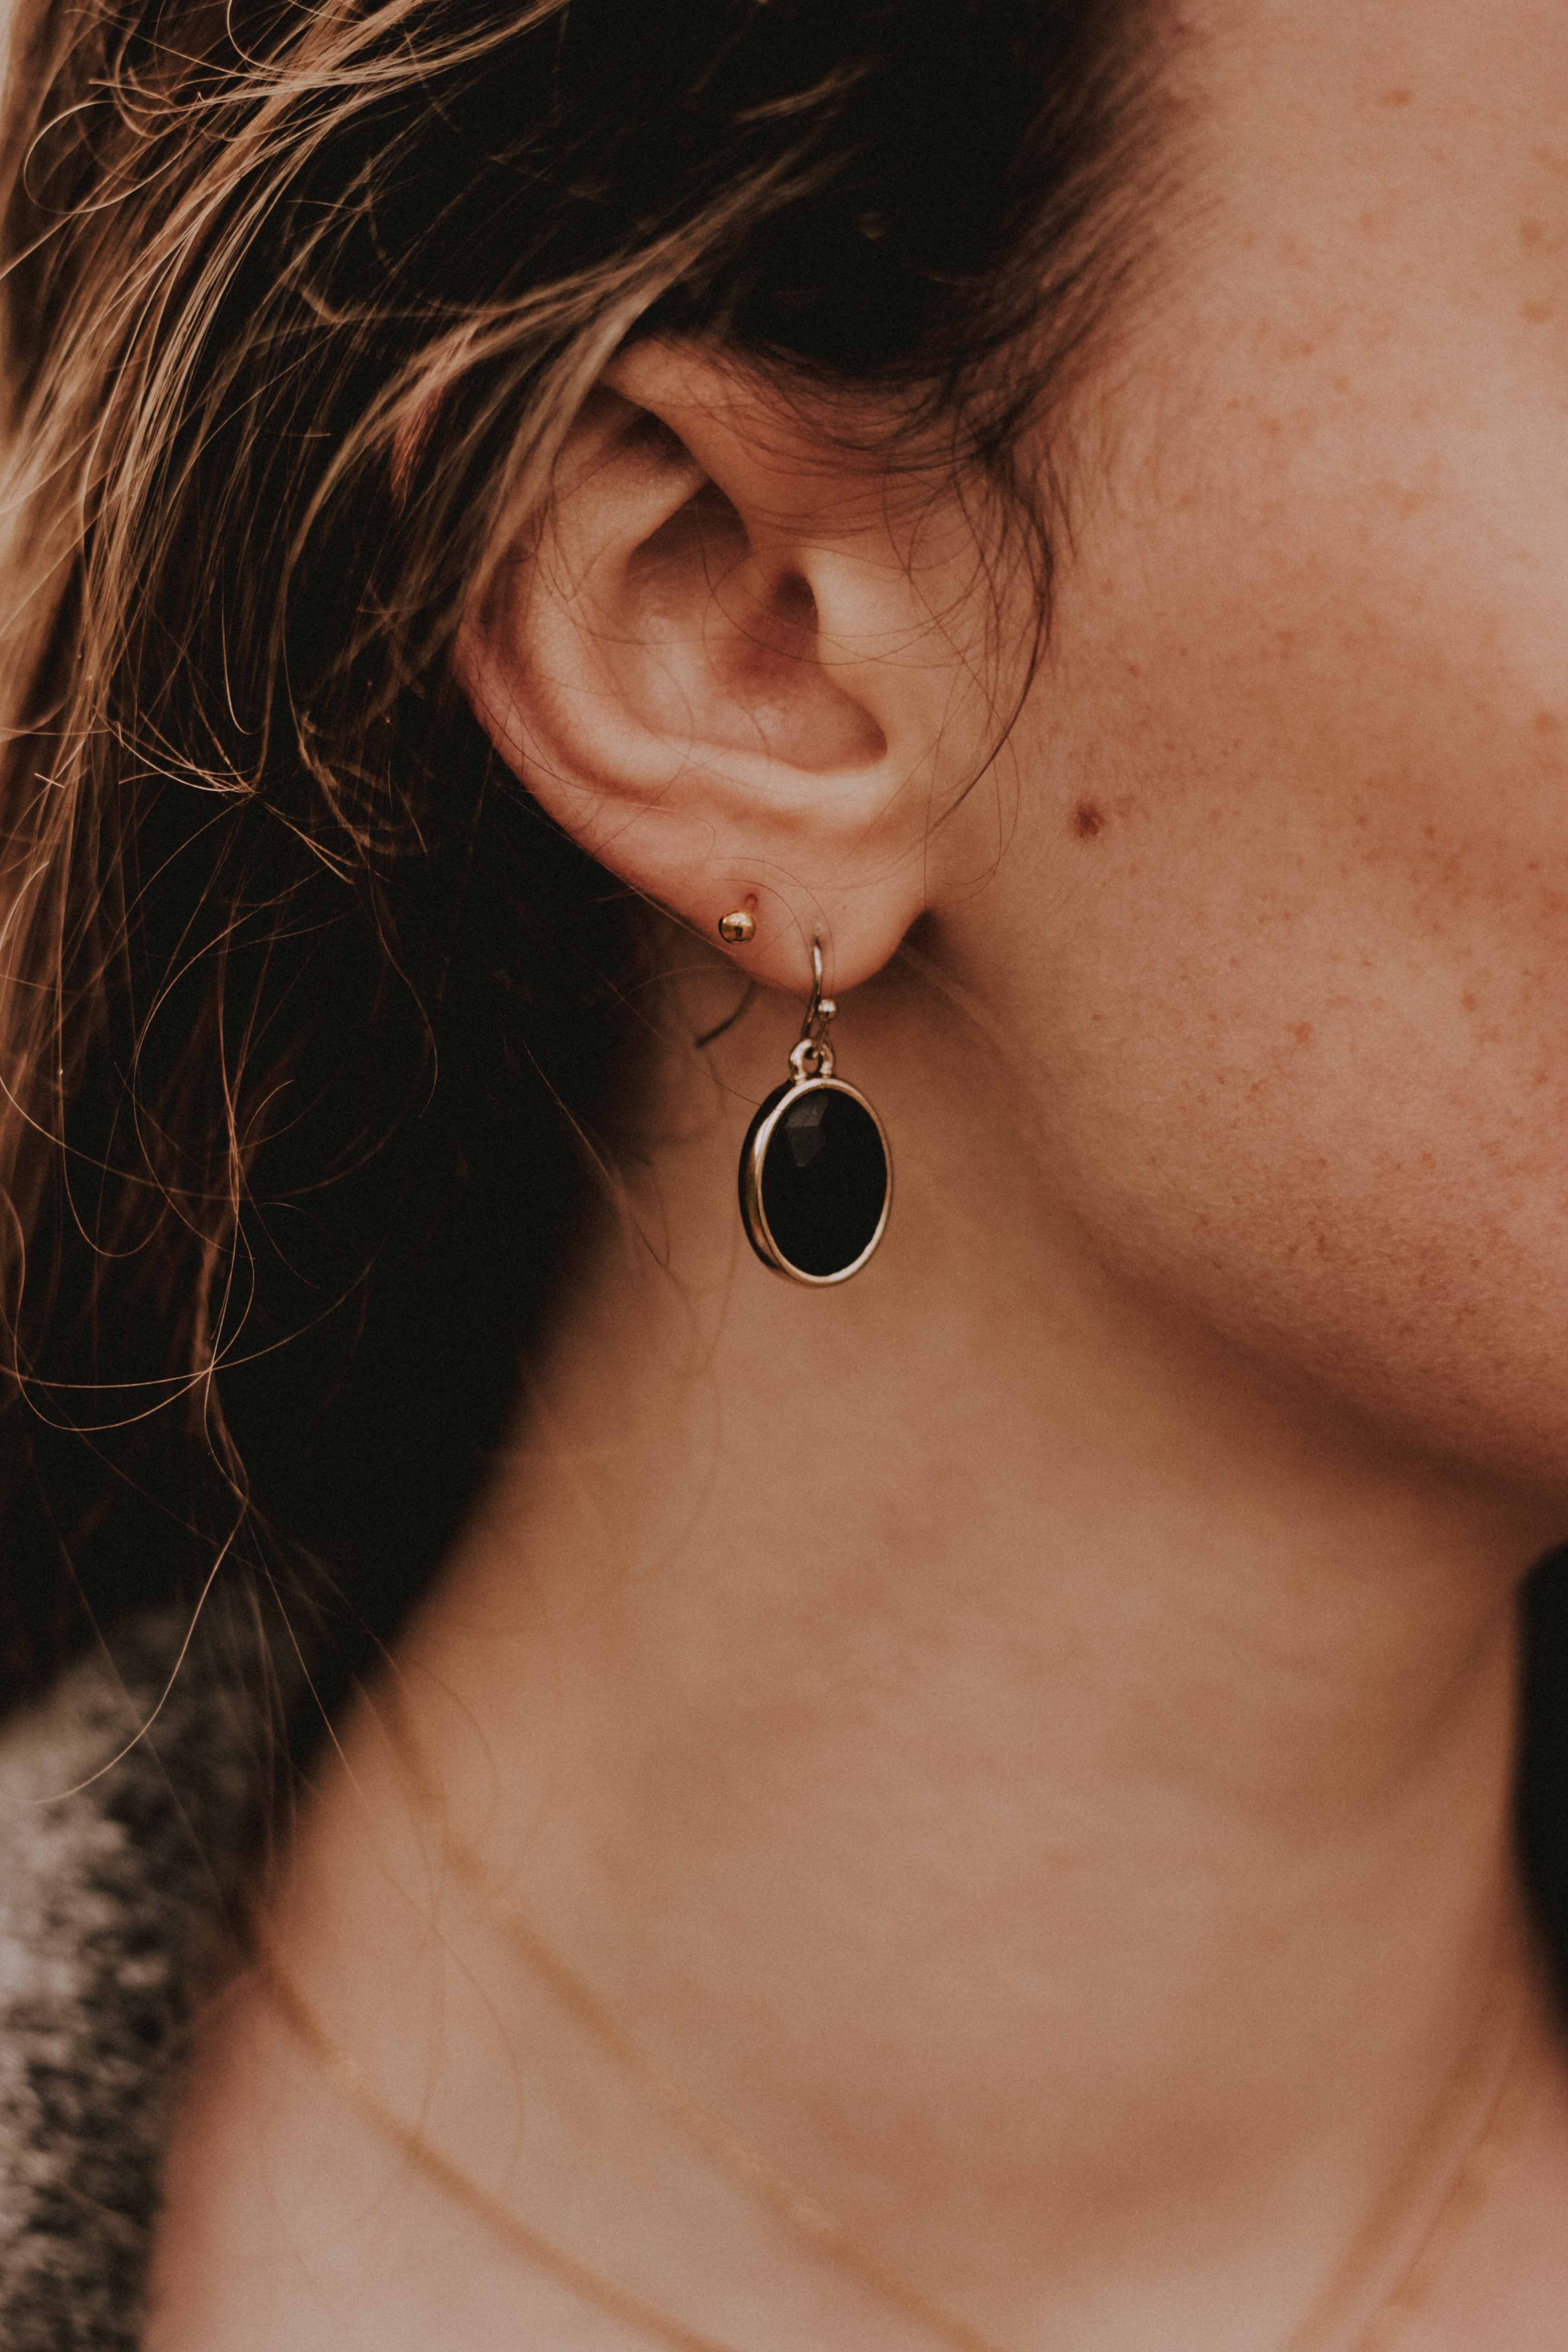 Fotografia de la oreja de una mujer con un arete colgando de forma redonda de color negro 